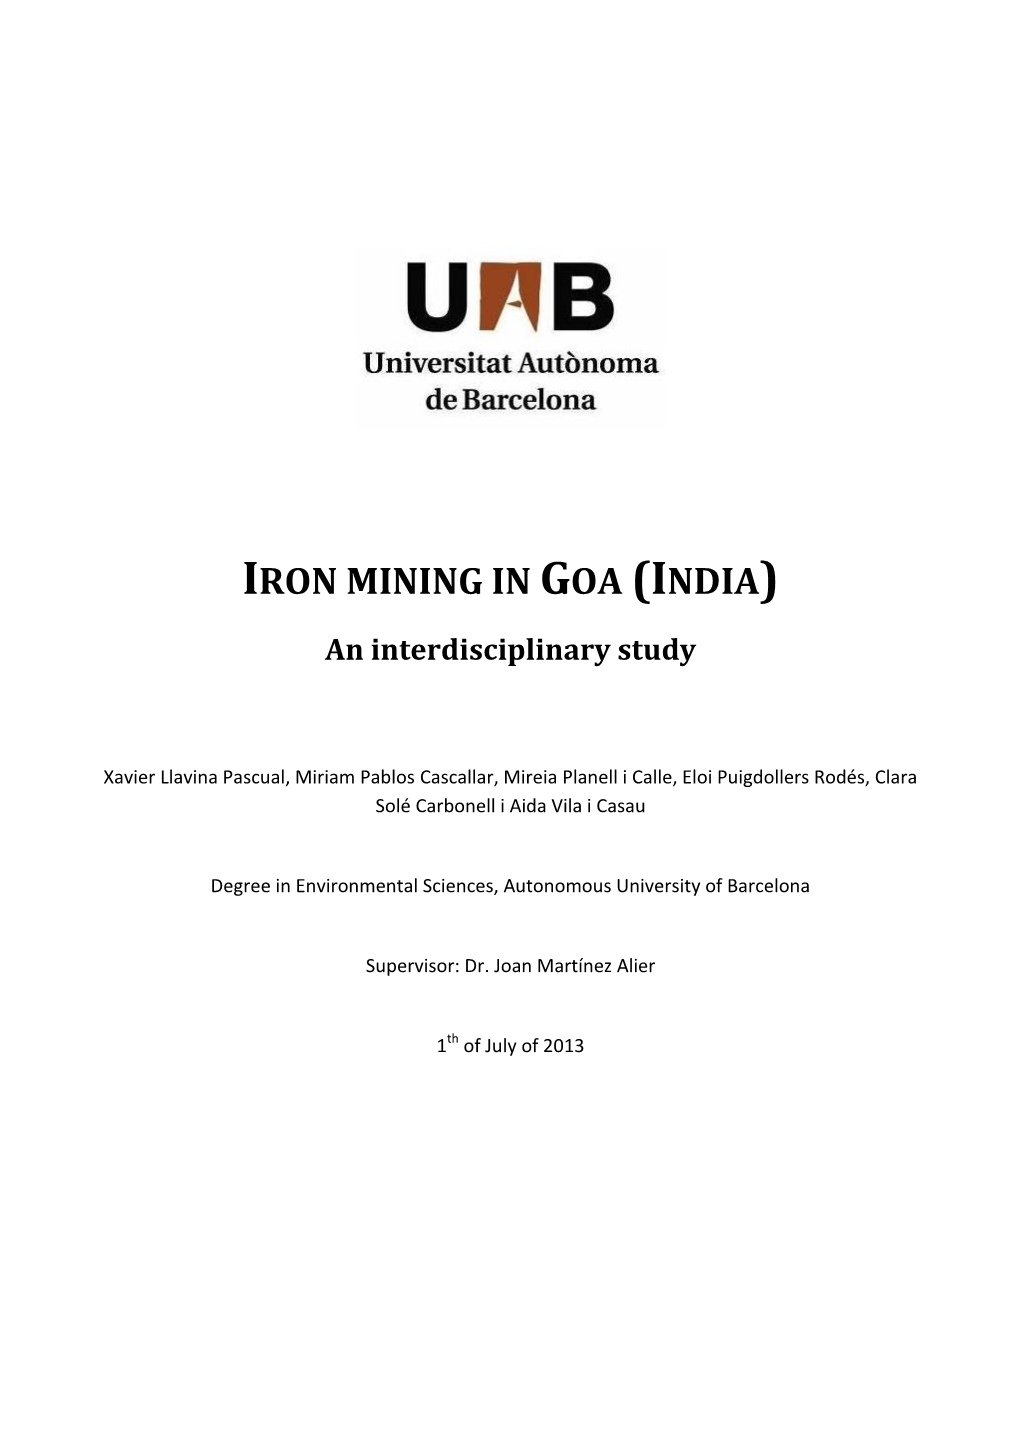 IRON MINING in GOA (INDIA) an Interdisciplinary Study